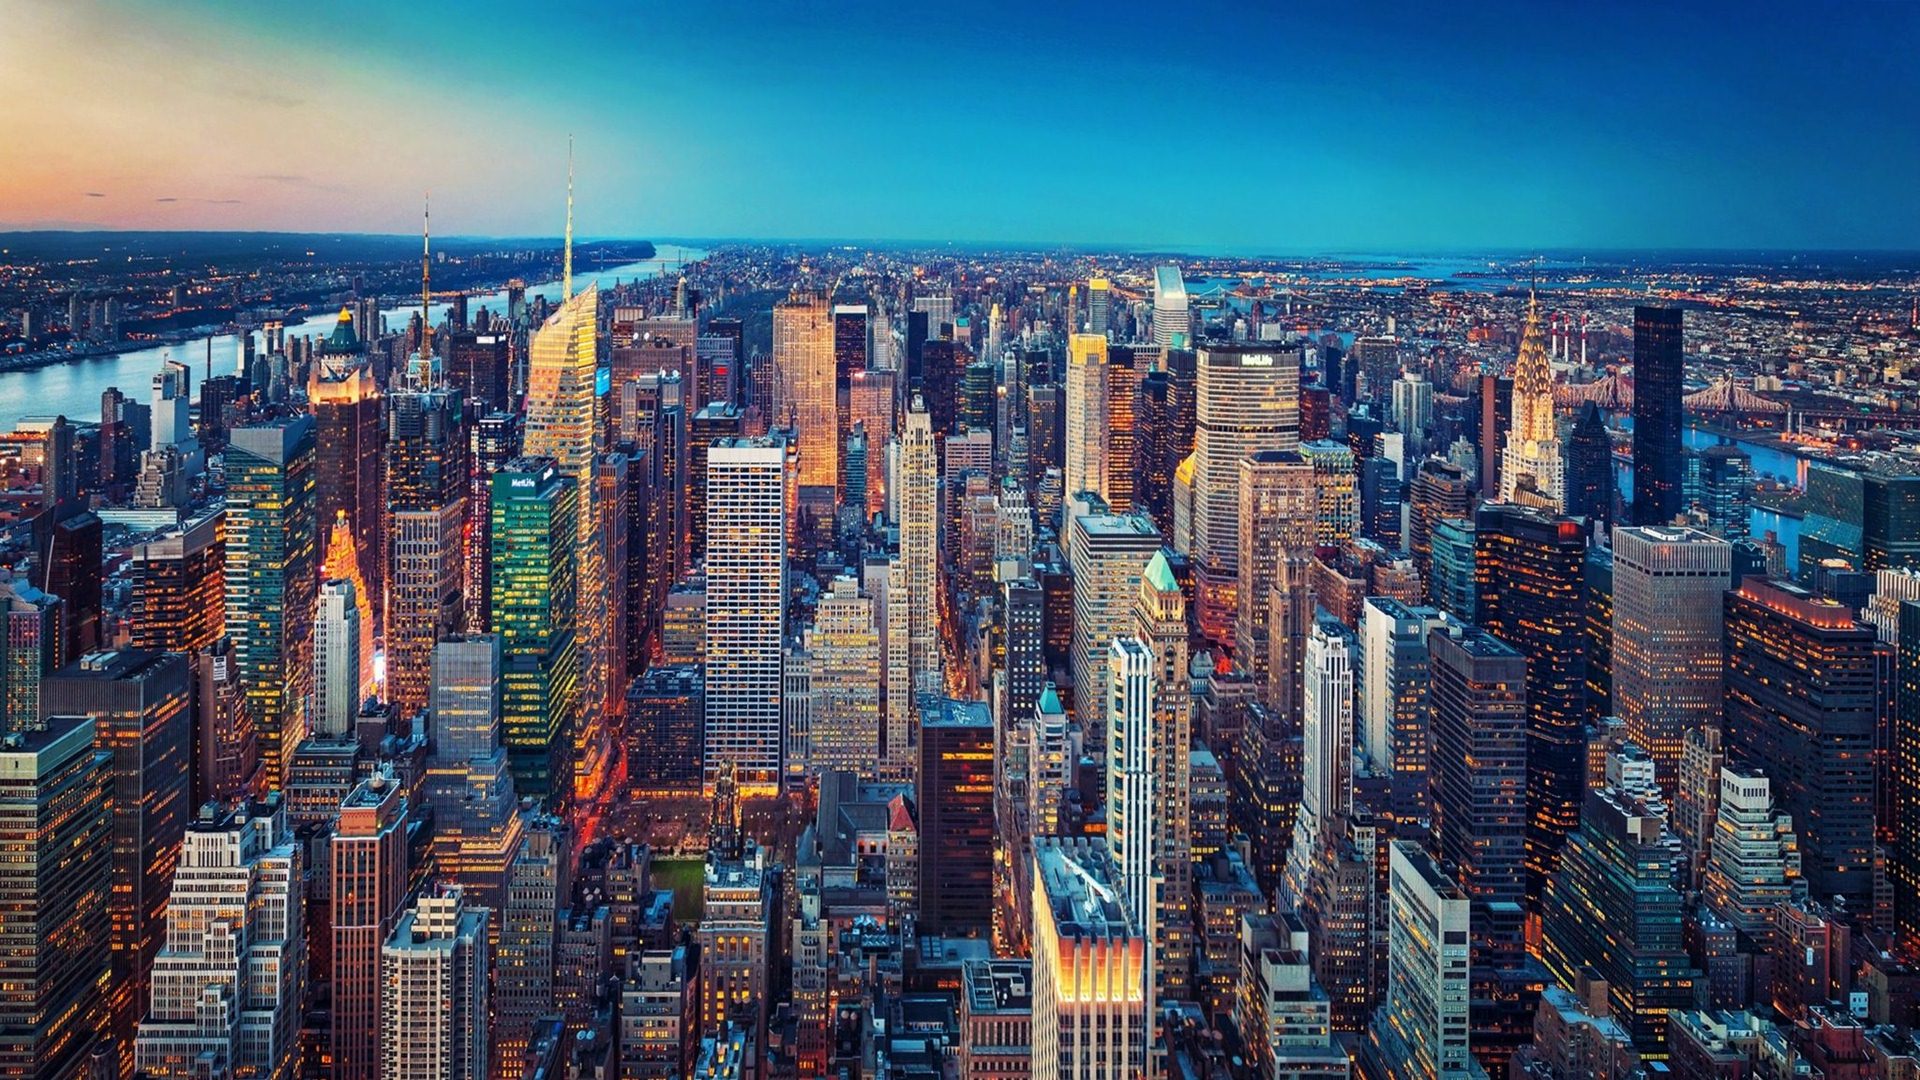 Tải hình nền New York để cập nhật cho màn hình của bạn Thành phố của những giấc mơ, những khu phố đầy năng lượng và những tòa nhà cao tầng nổi tiếng trên thế giới đều có mặt trong hình nền New York. Hãy tải về để thư giãn và tận hưởng cảm giác như đang đứng giữa trung tâm của thế giới.